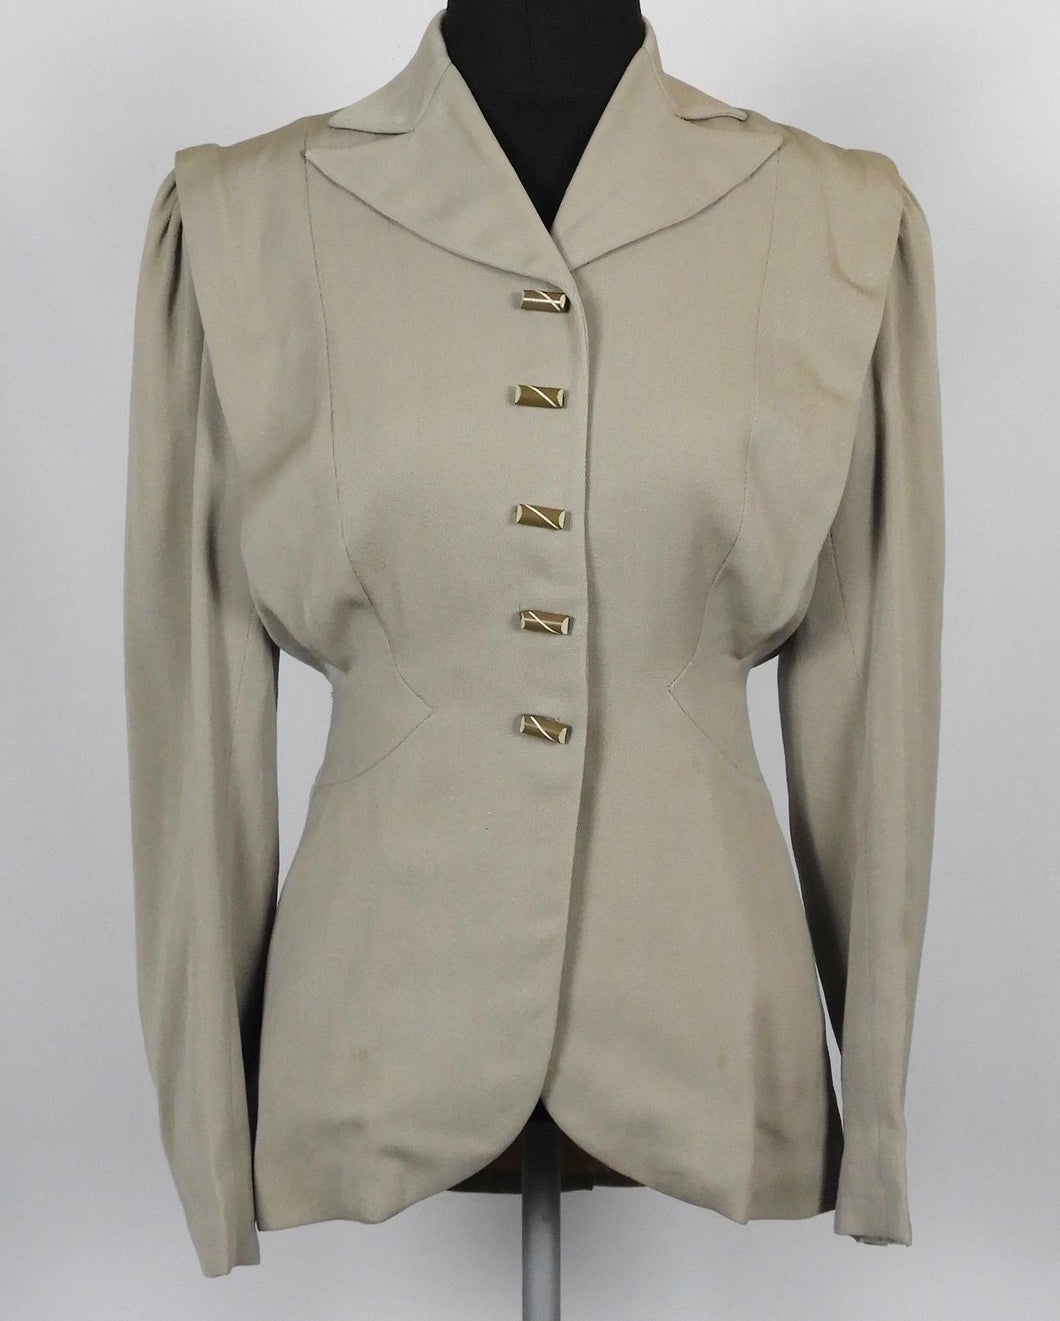 1940s American Wool Suit Jacket - B36